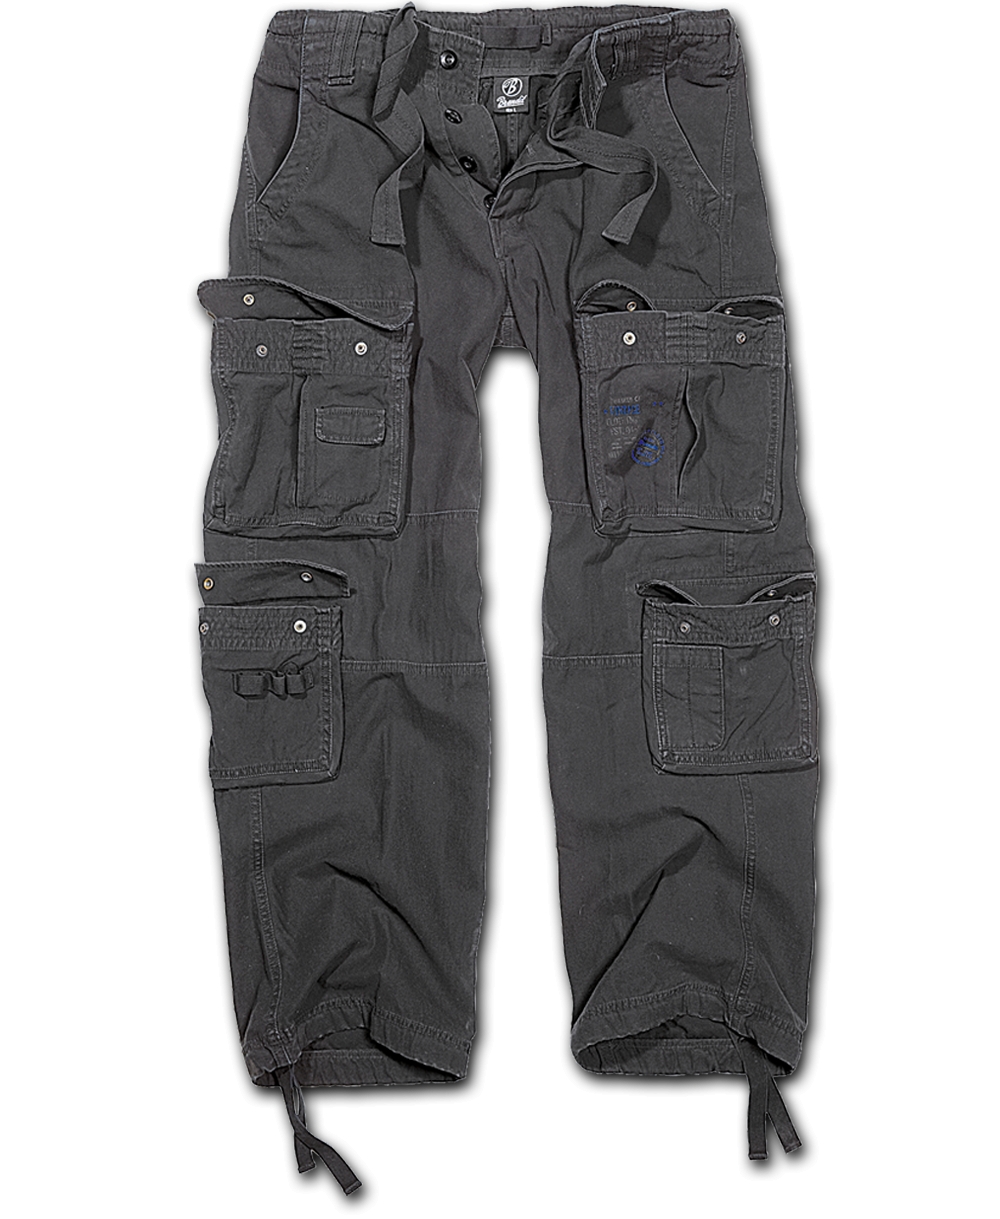 Kalhoty Brandit Pure Vintage - černé, 3XL